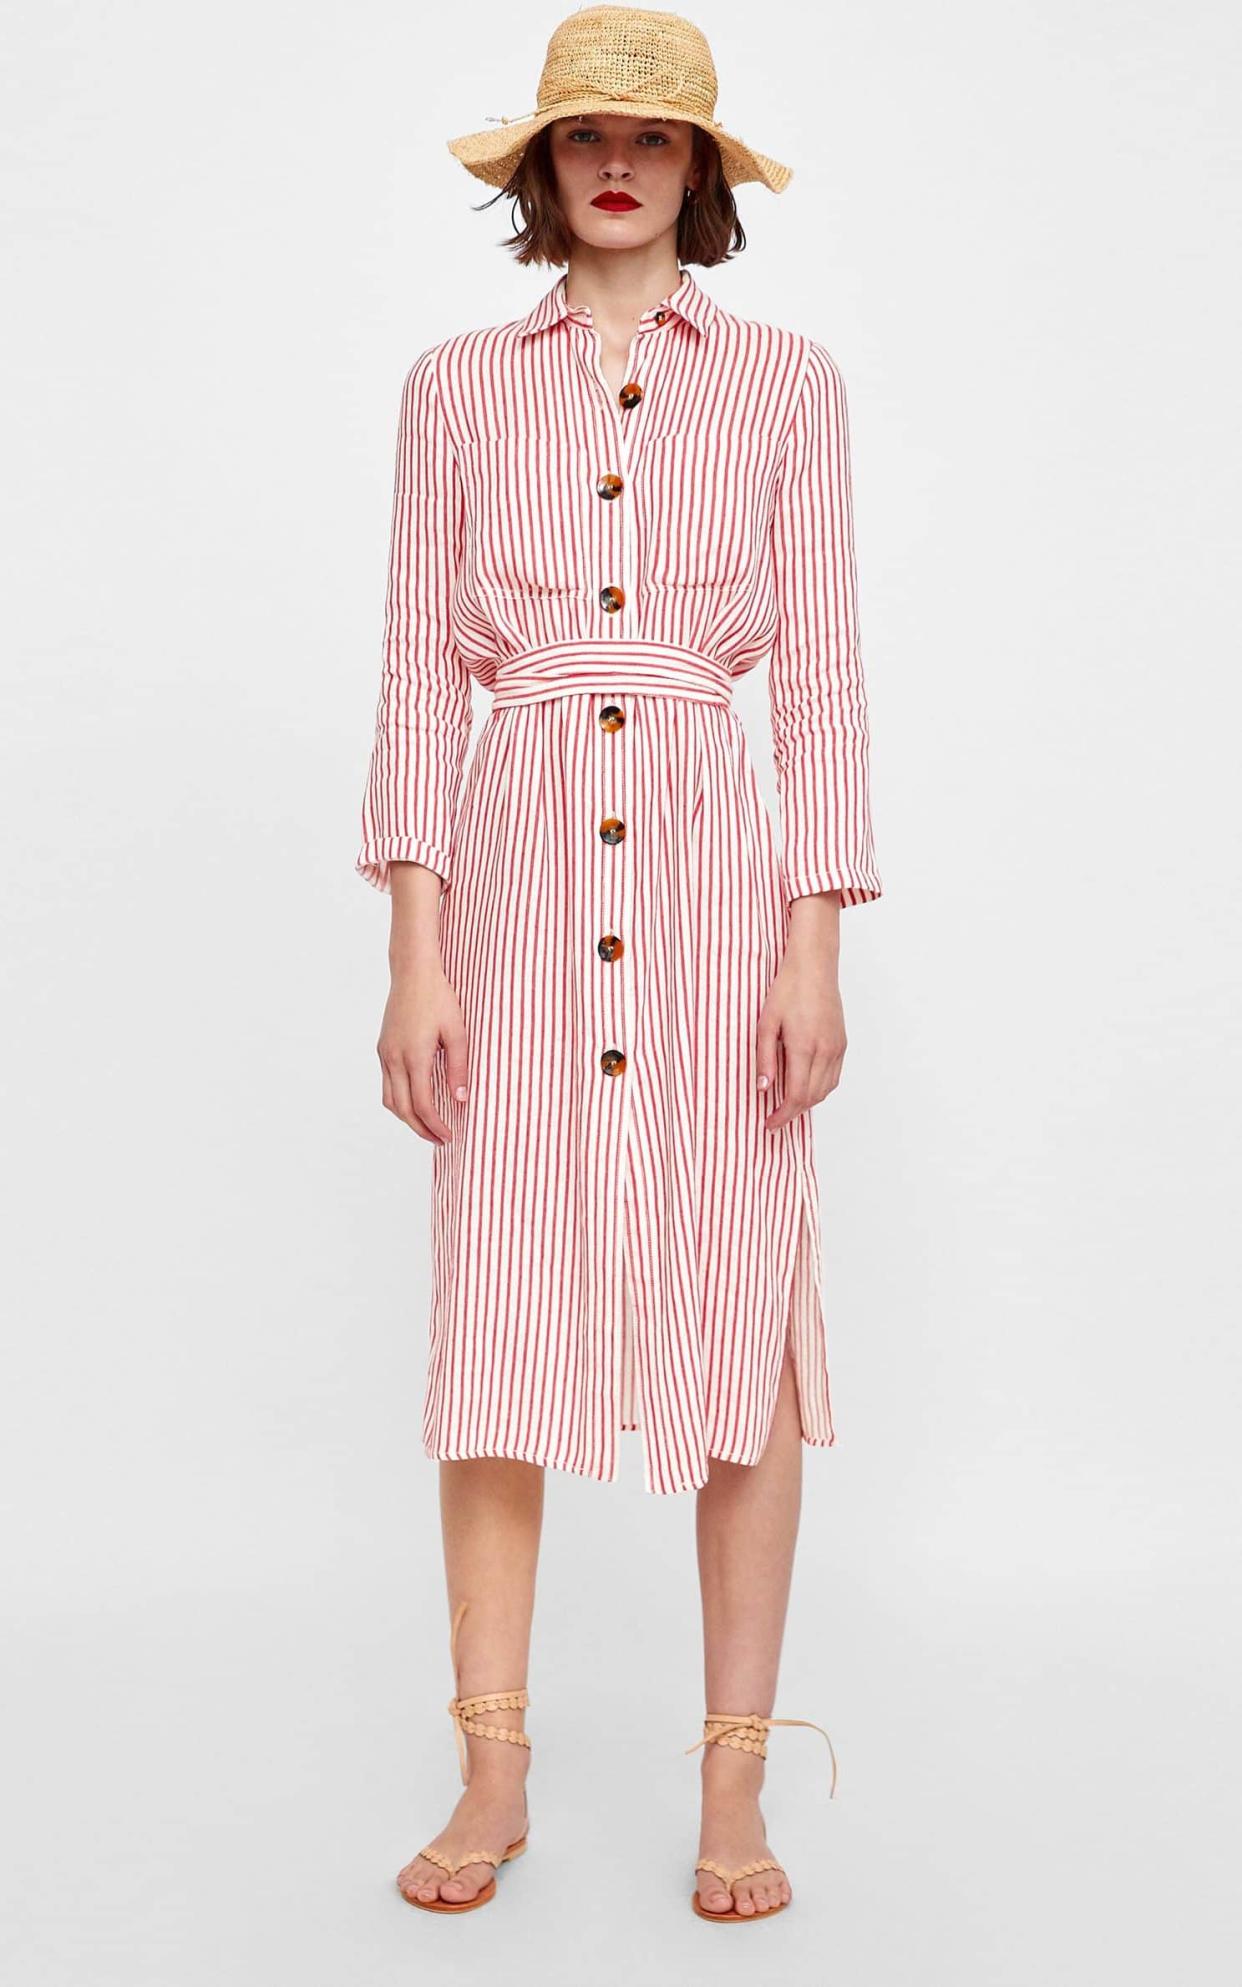 Red striped dress, £39.99, Zara. 